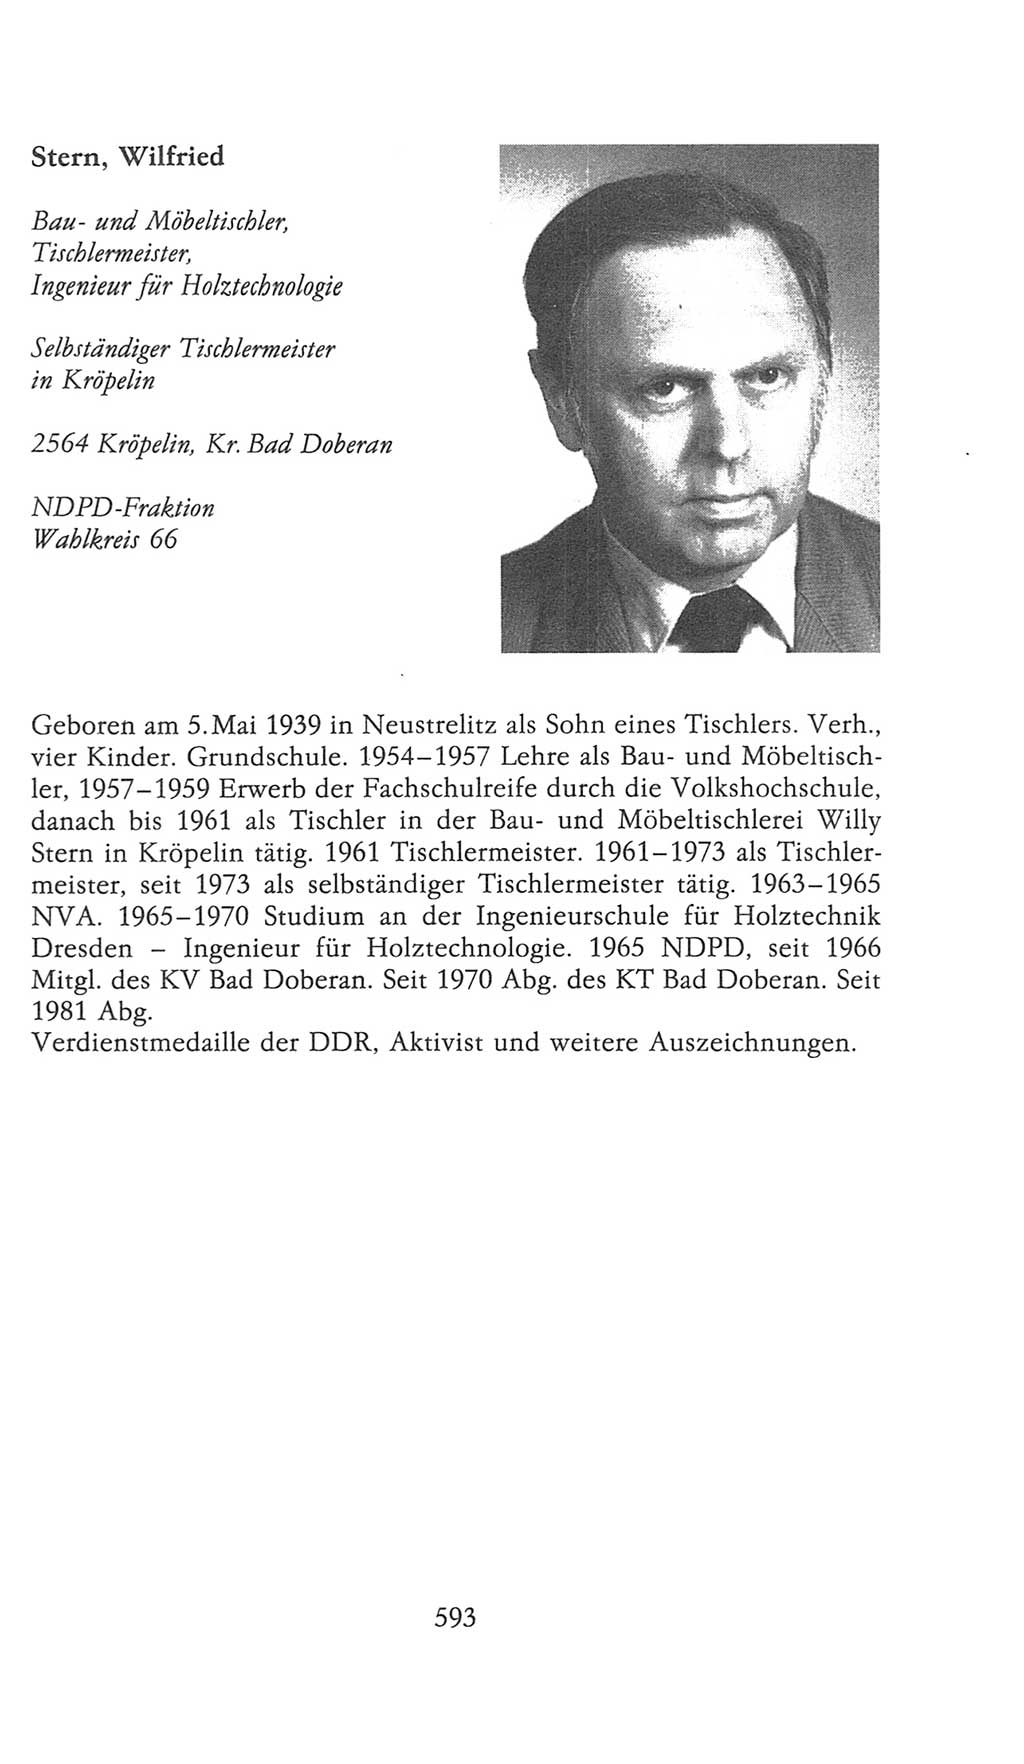 Volkskammer (VK) der Deutschen Demokratischen Republik (DDR), 9. Wahlperiode 1986-1990, Seite 593 (VK. DDR 9. WP. 1986-1990, S. 593)